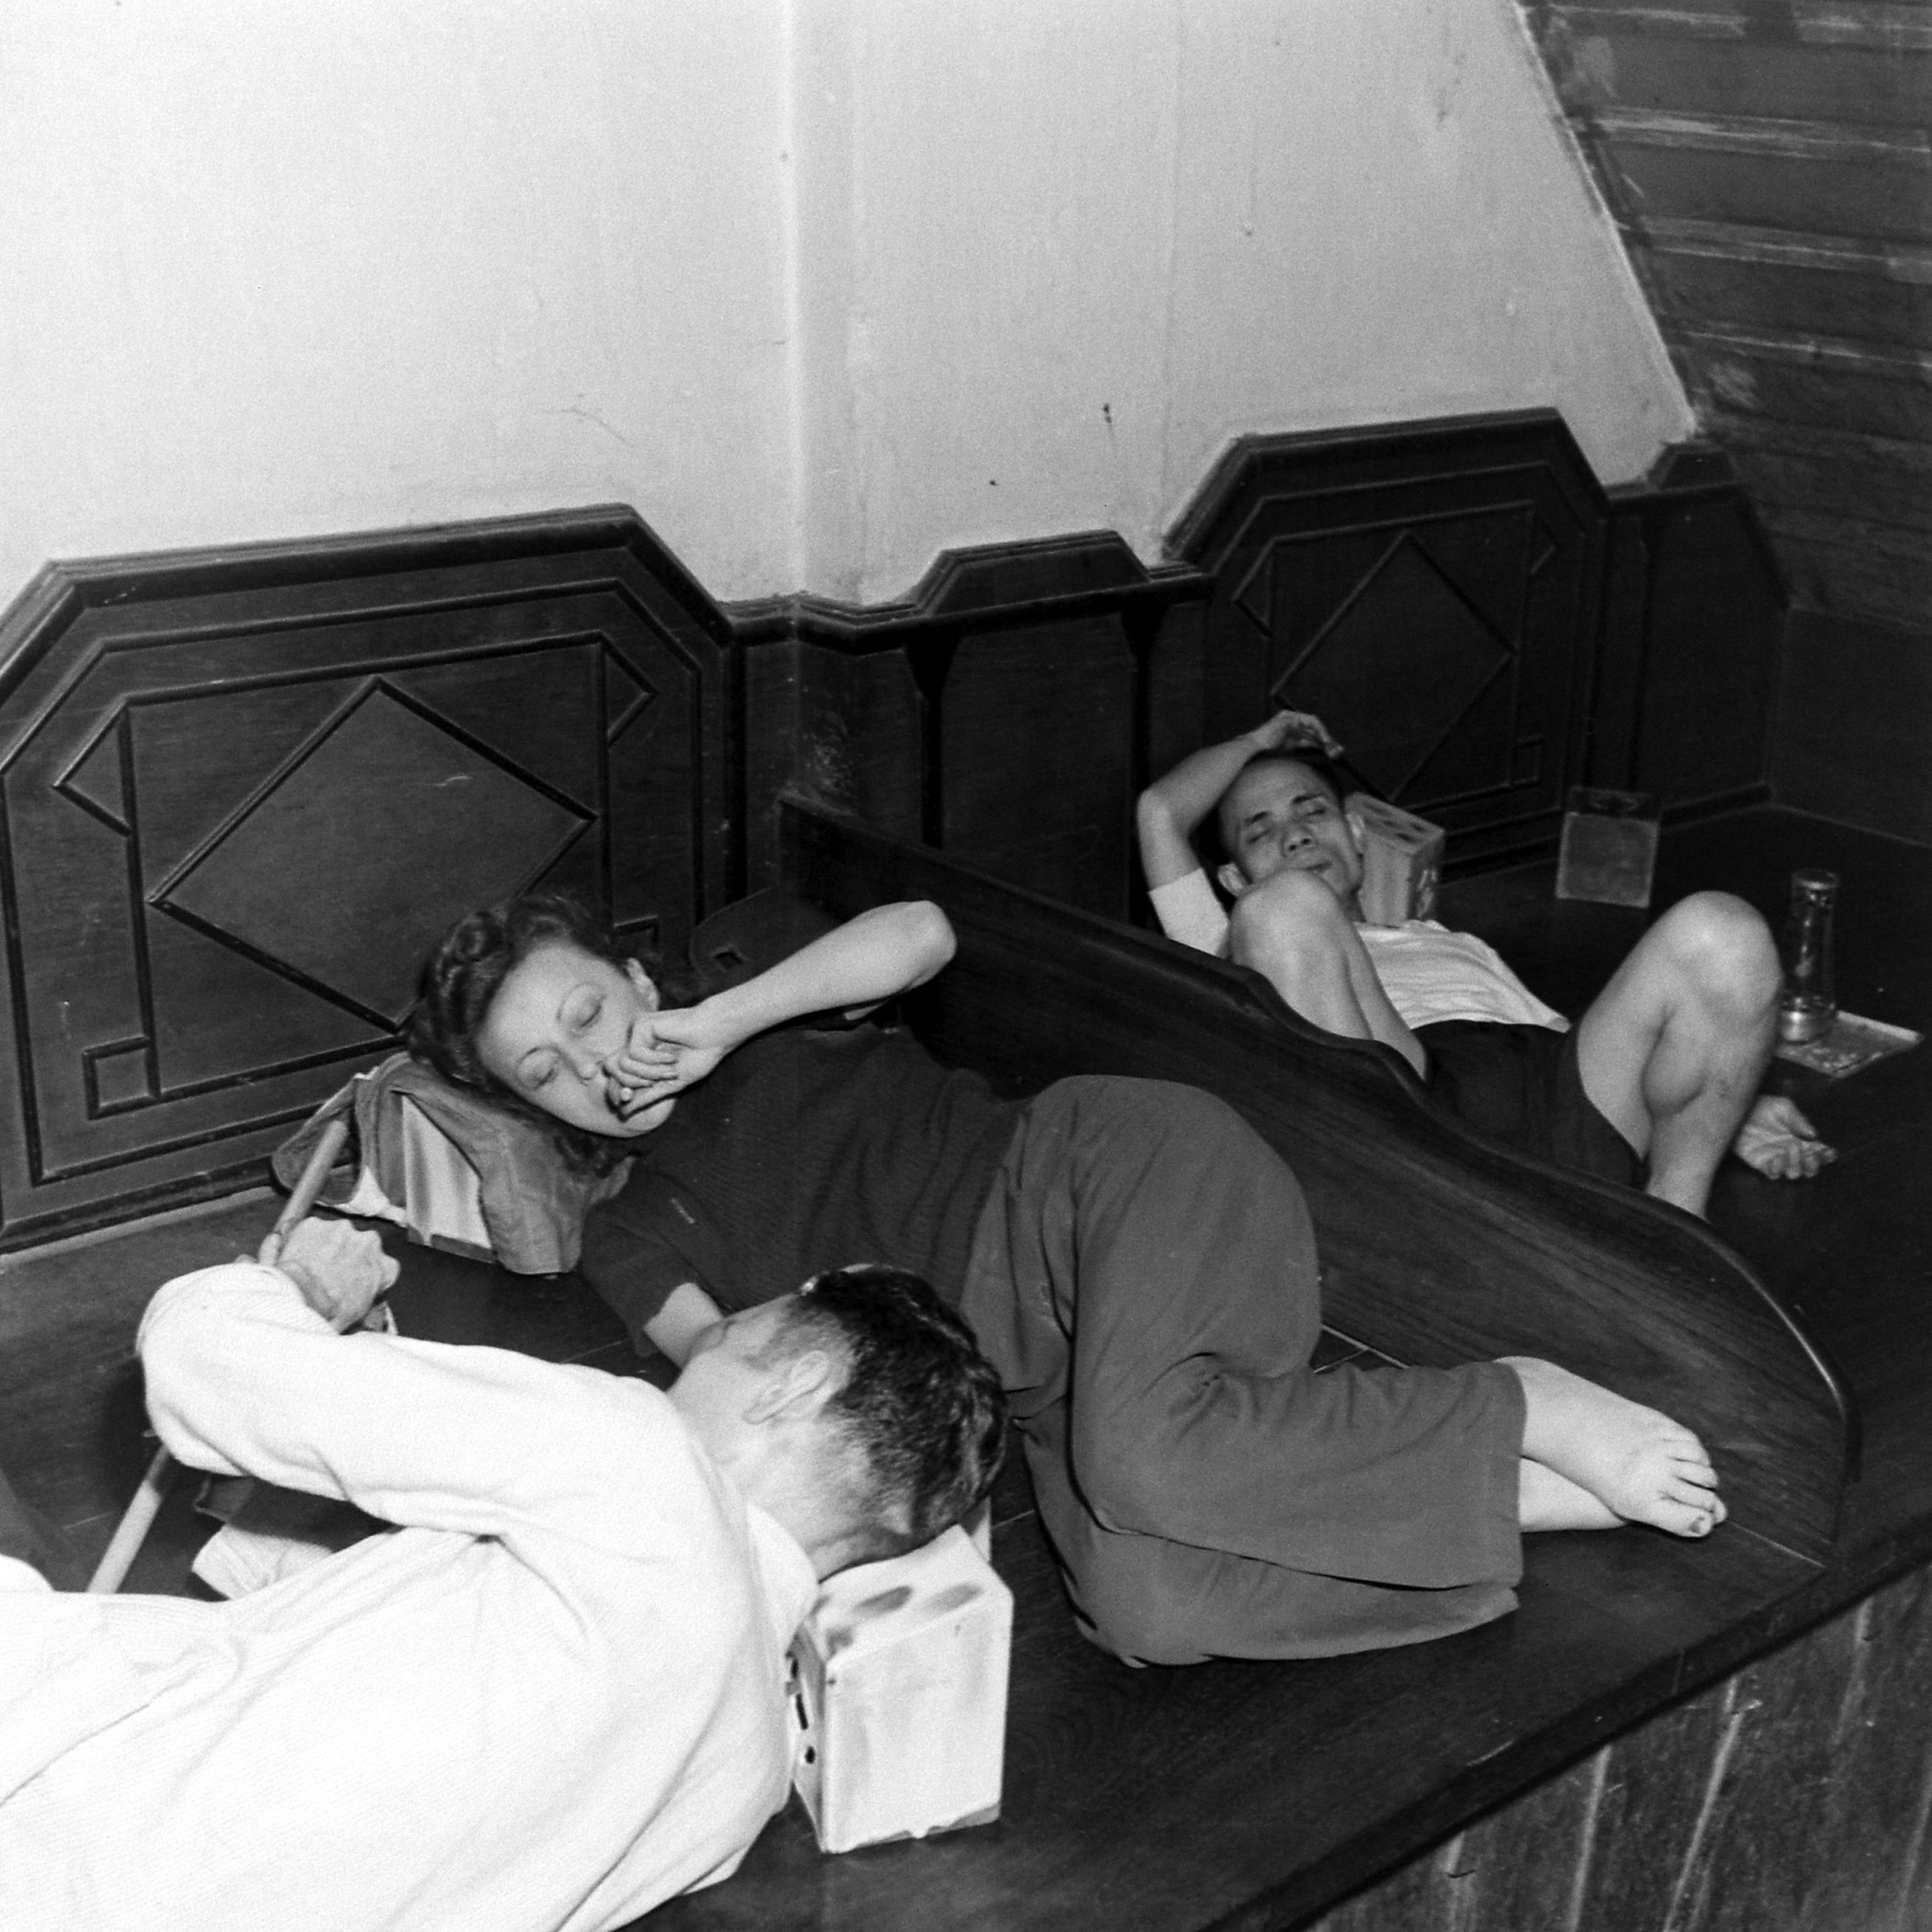 Opium addicts in Saigan 1949